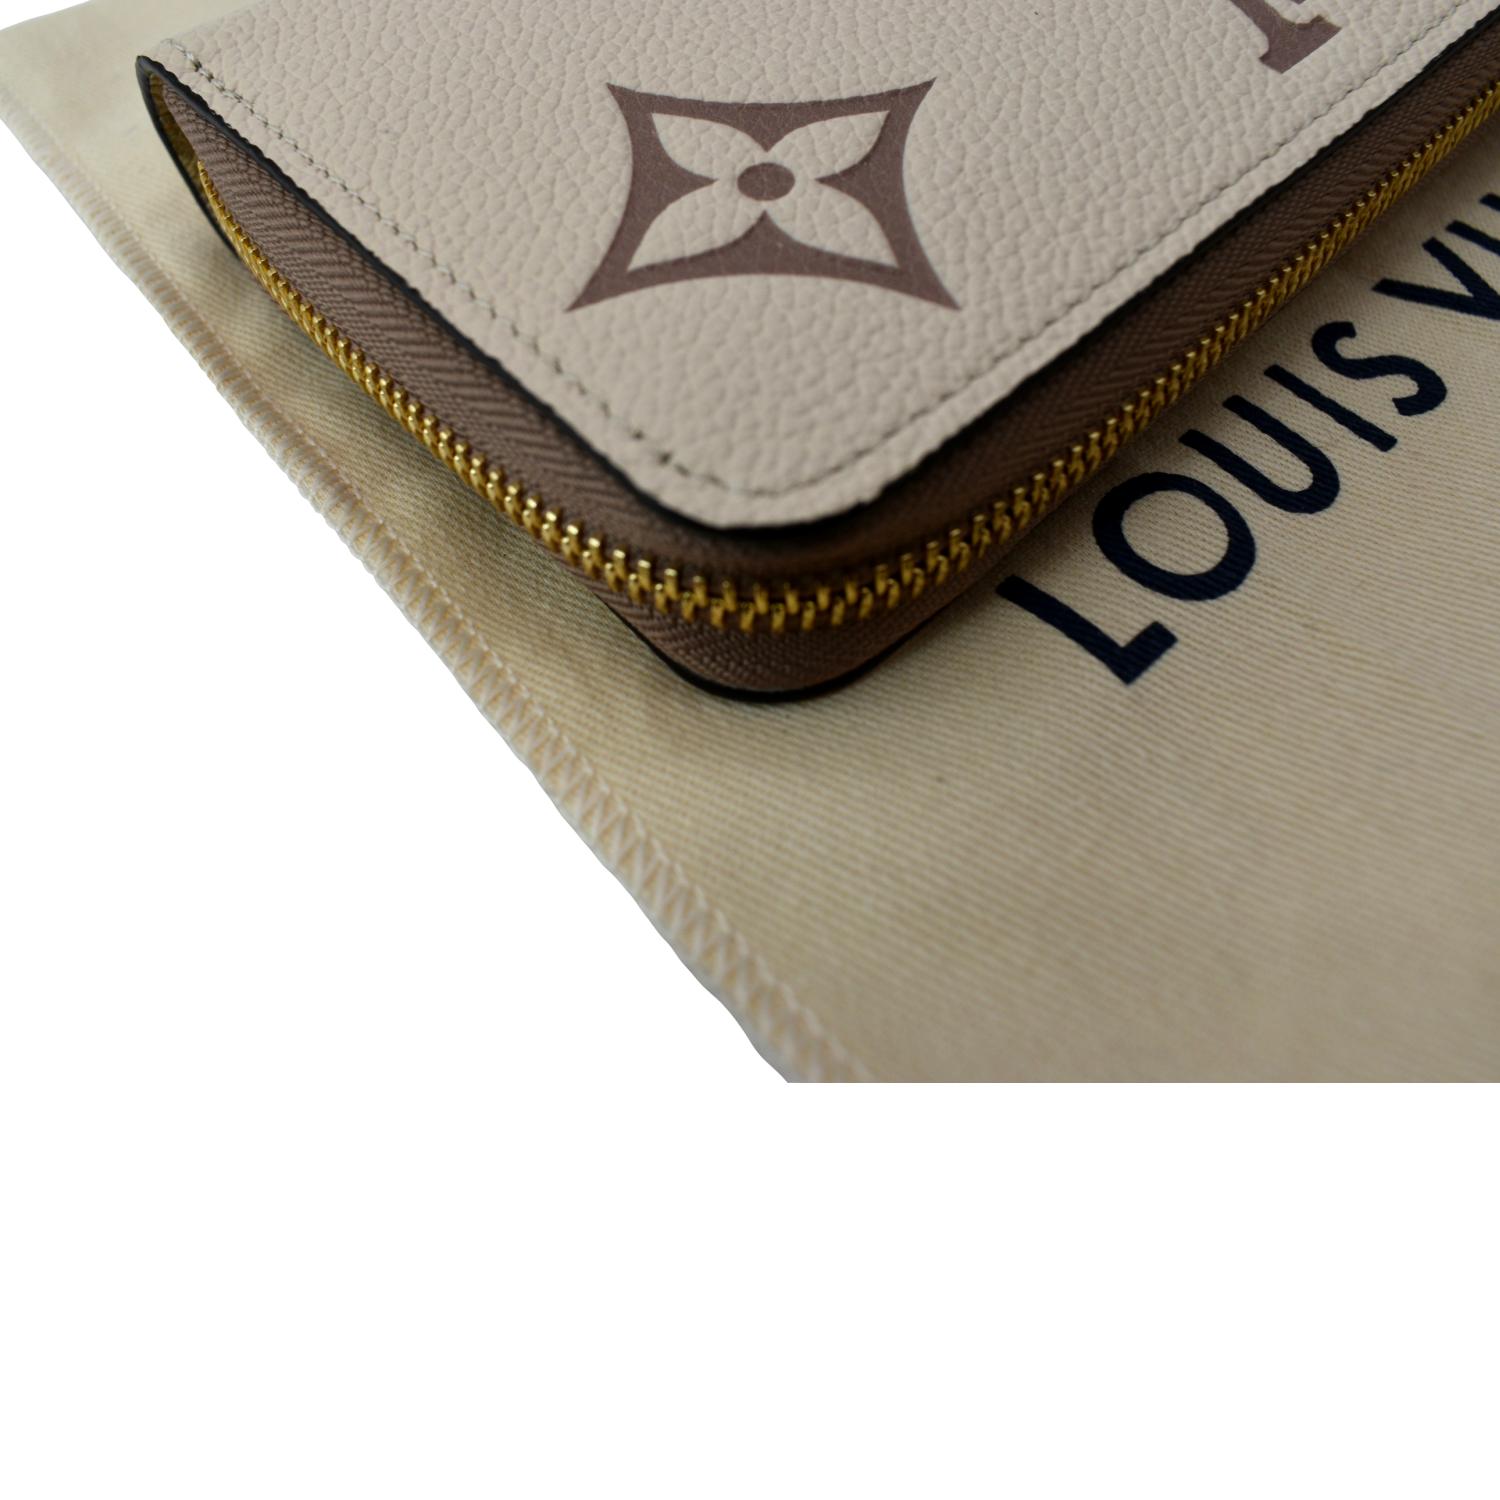 LOUIS VUITTON Felicie Pochette Monogram Wallet & Inserts